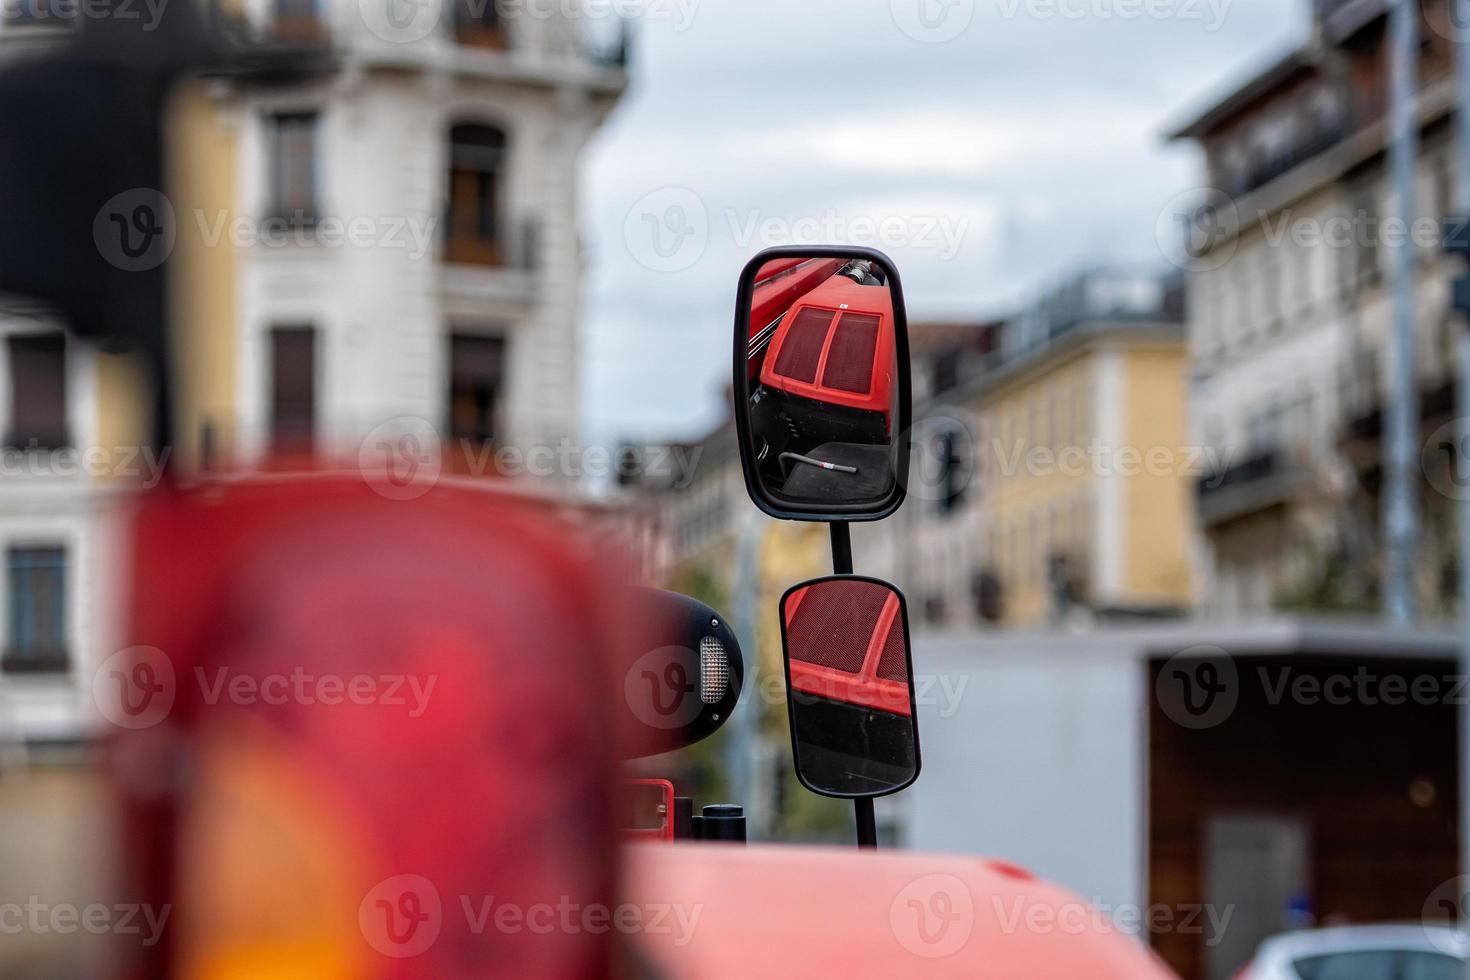 primo piano dello specchietto laterale del trattore su sfondo sfocato della città. lo specchio mostra il cofano rosso del trattore. foto